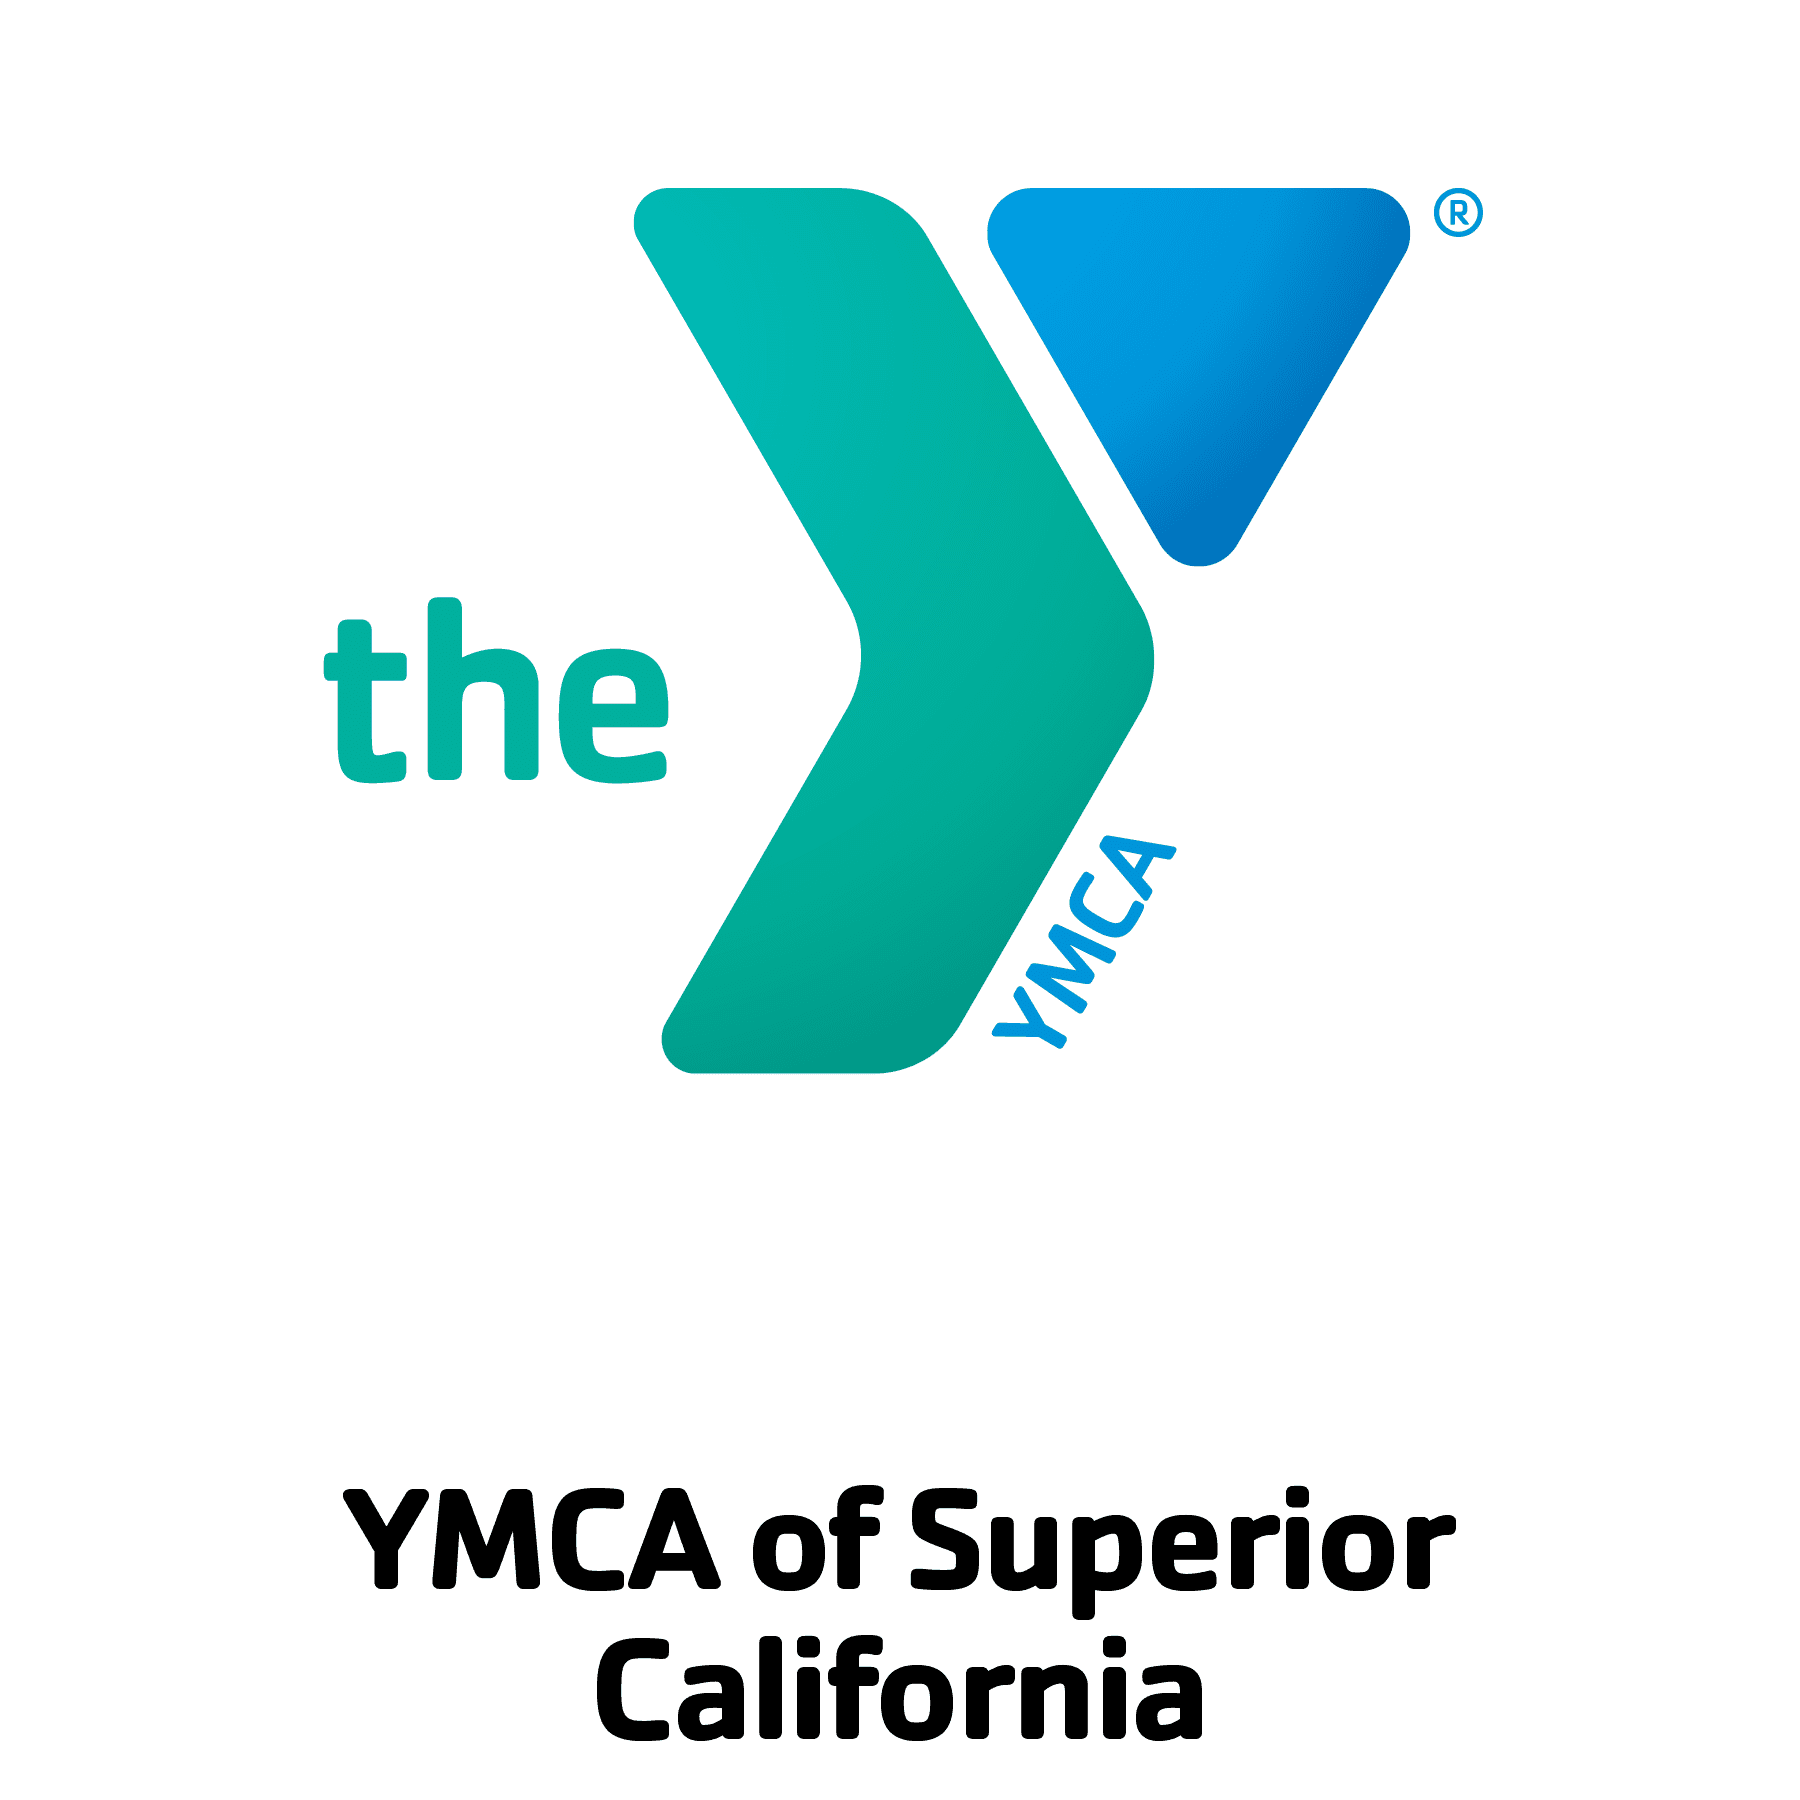 YMCA of Superior California 01